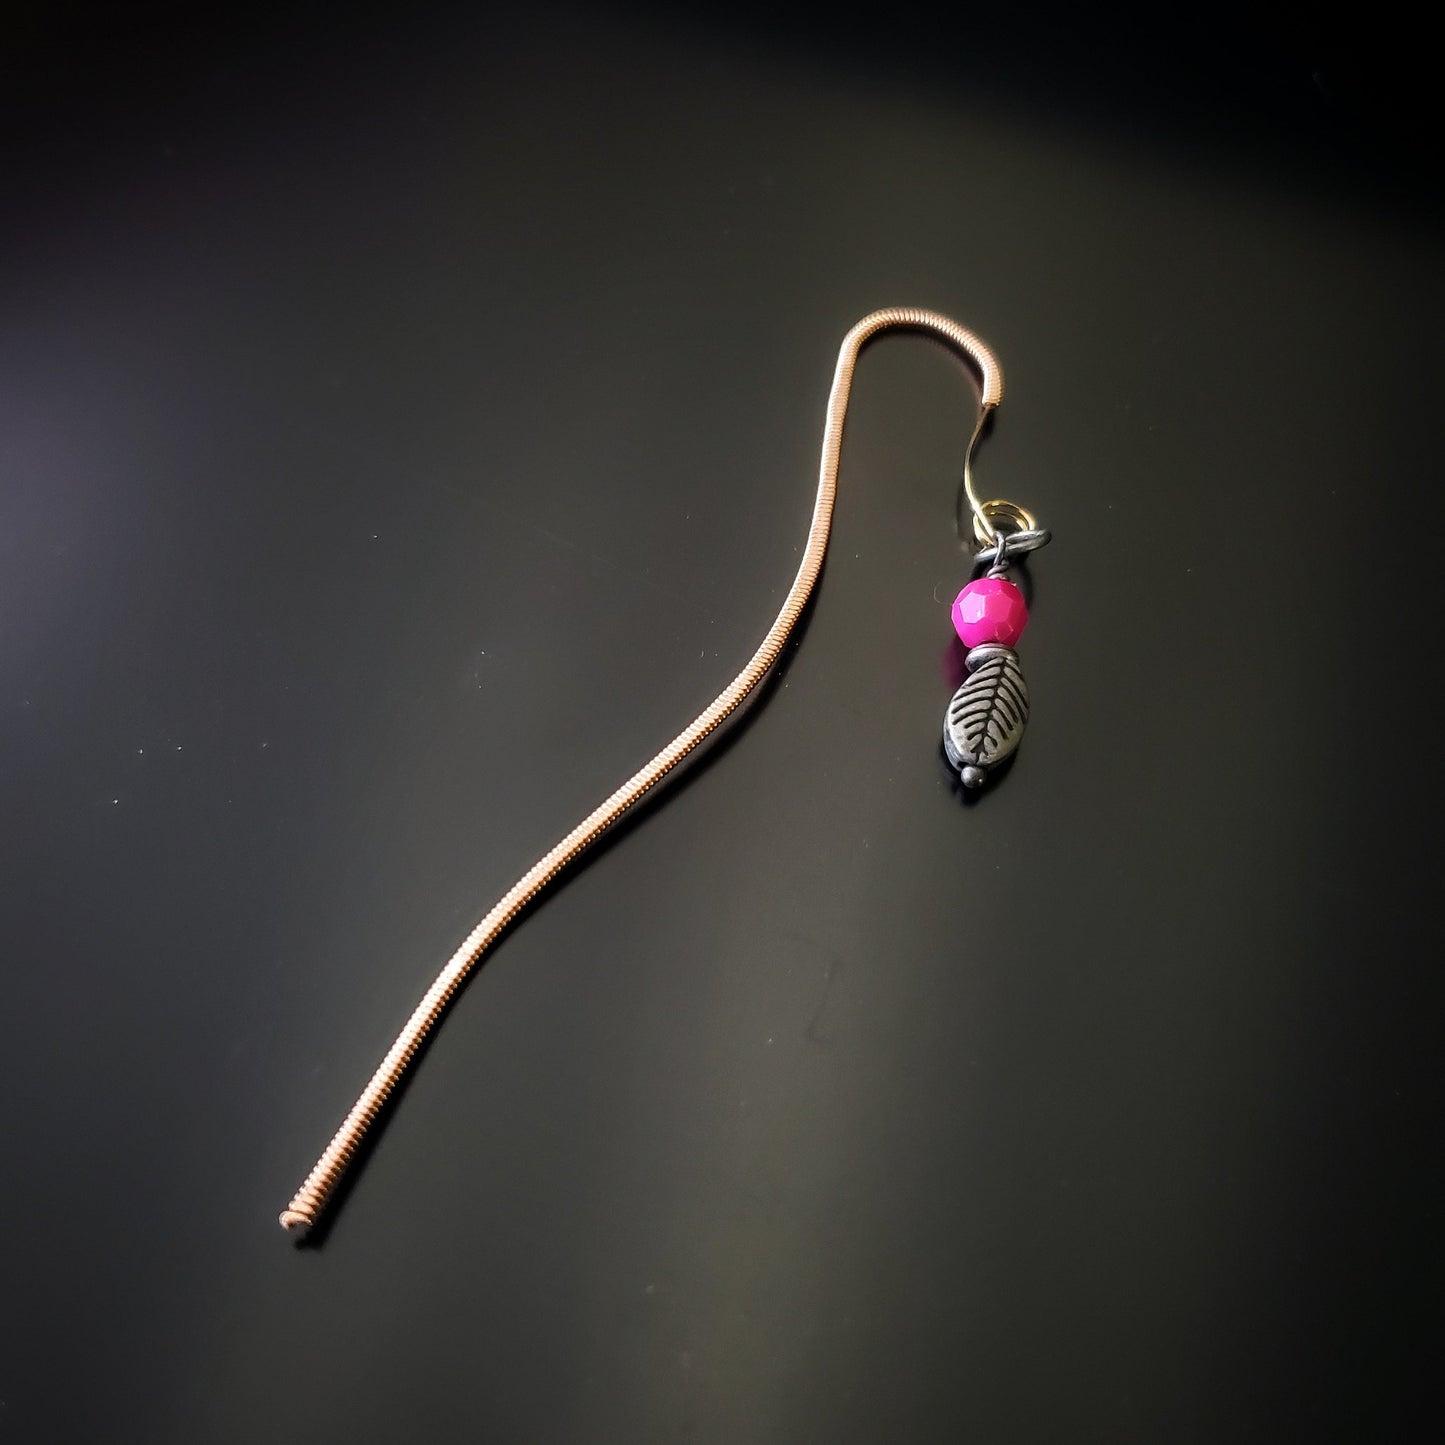 Signet style crochet en corde de guitare avec charme feuille et bille rose.